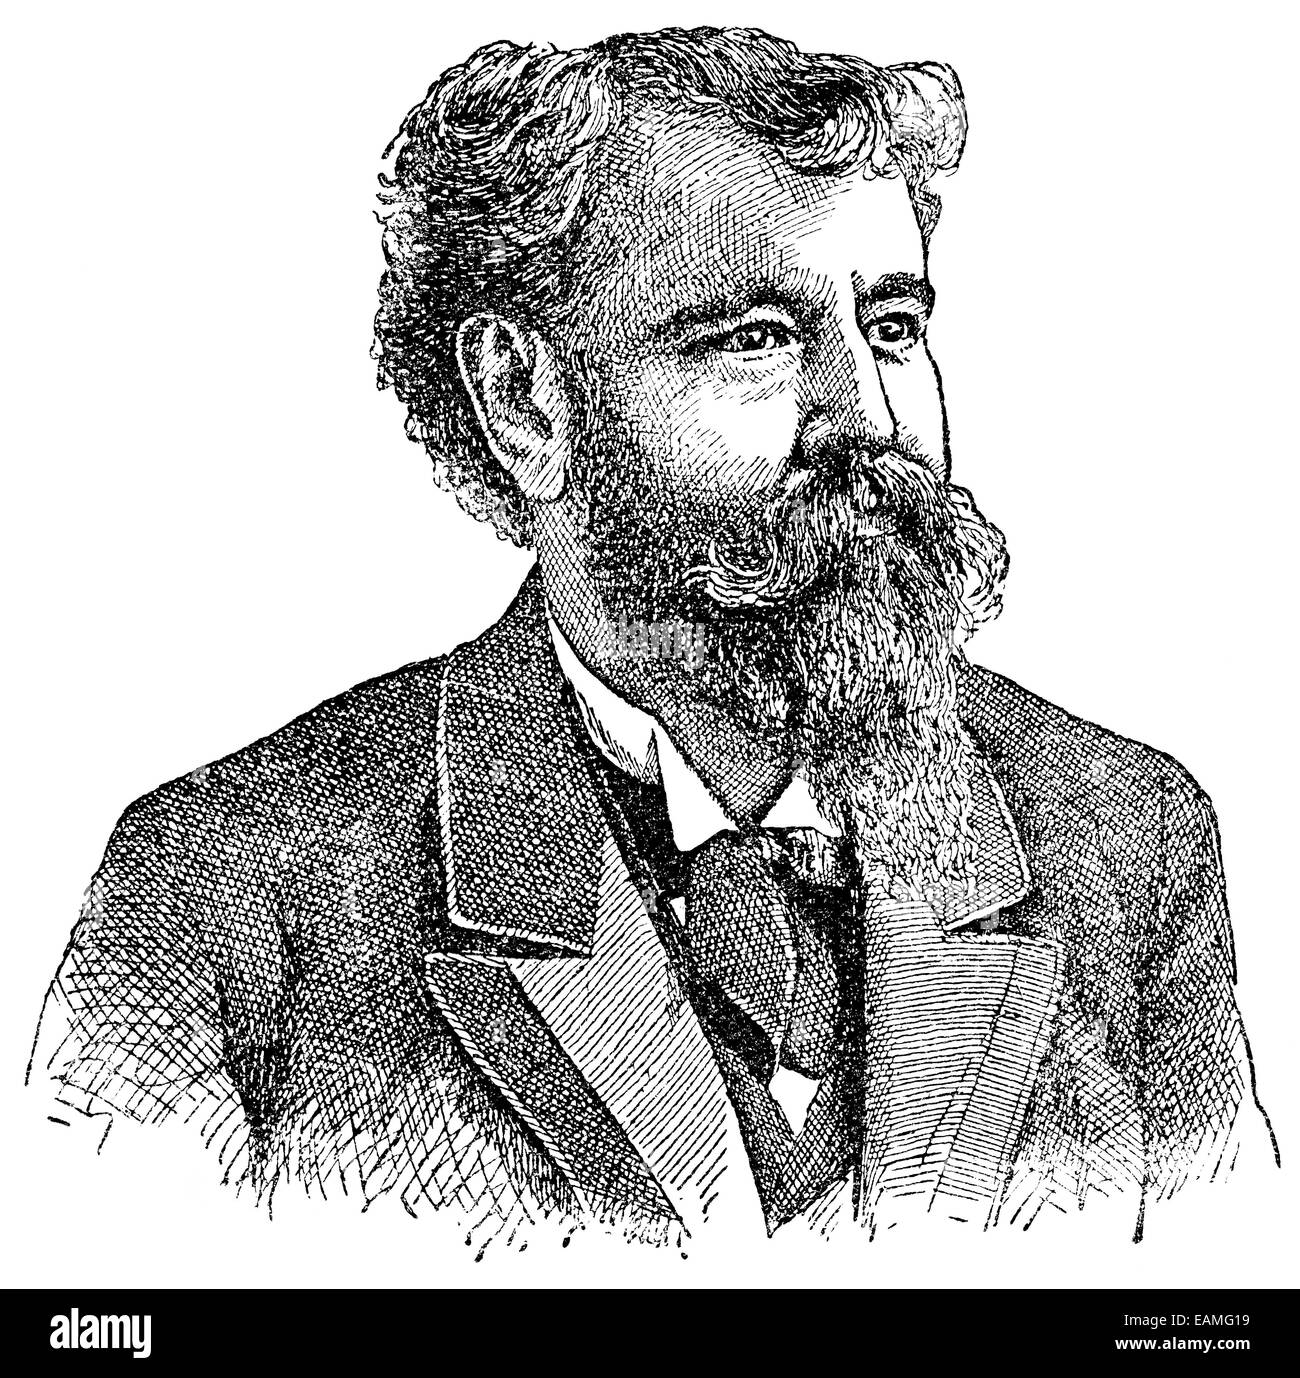 Австрийский писатель 5 букв. Г. МАКЛЕОД (1821—1902).